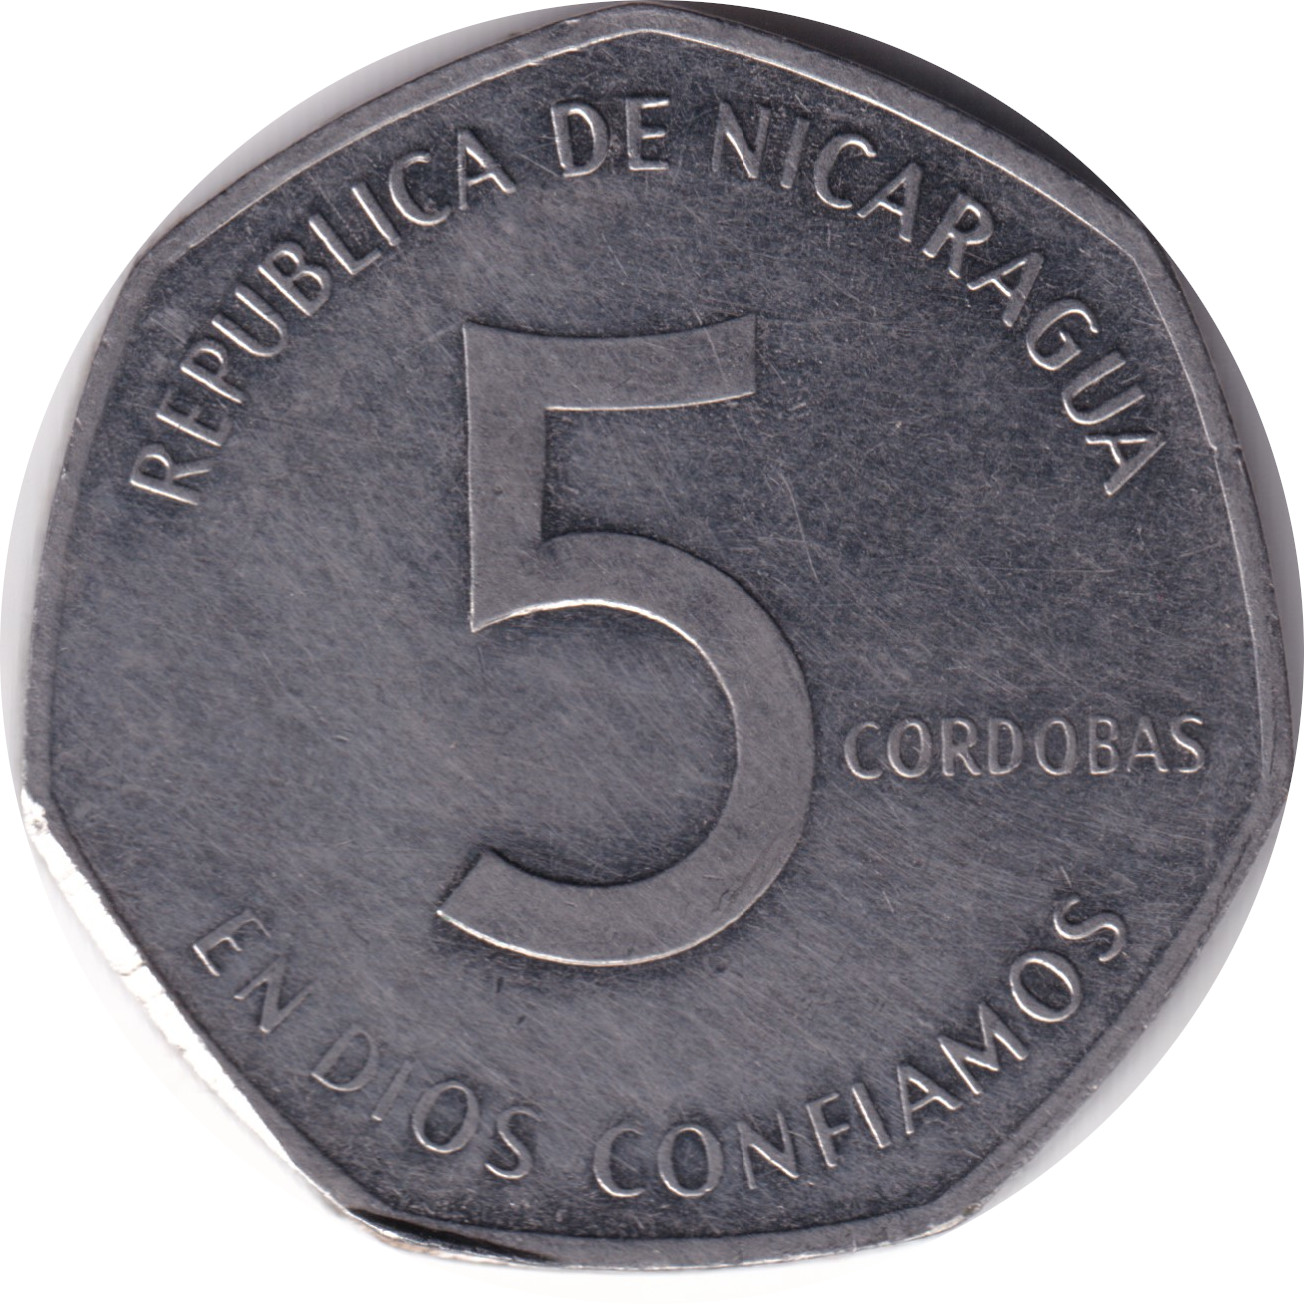 5 cordobas - César Augusto Sandino